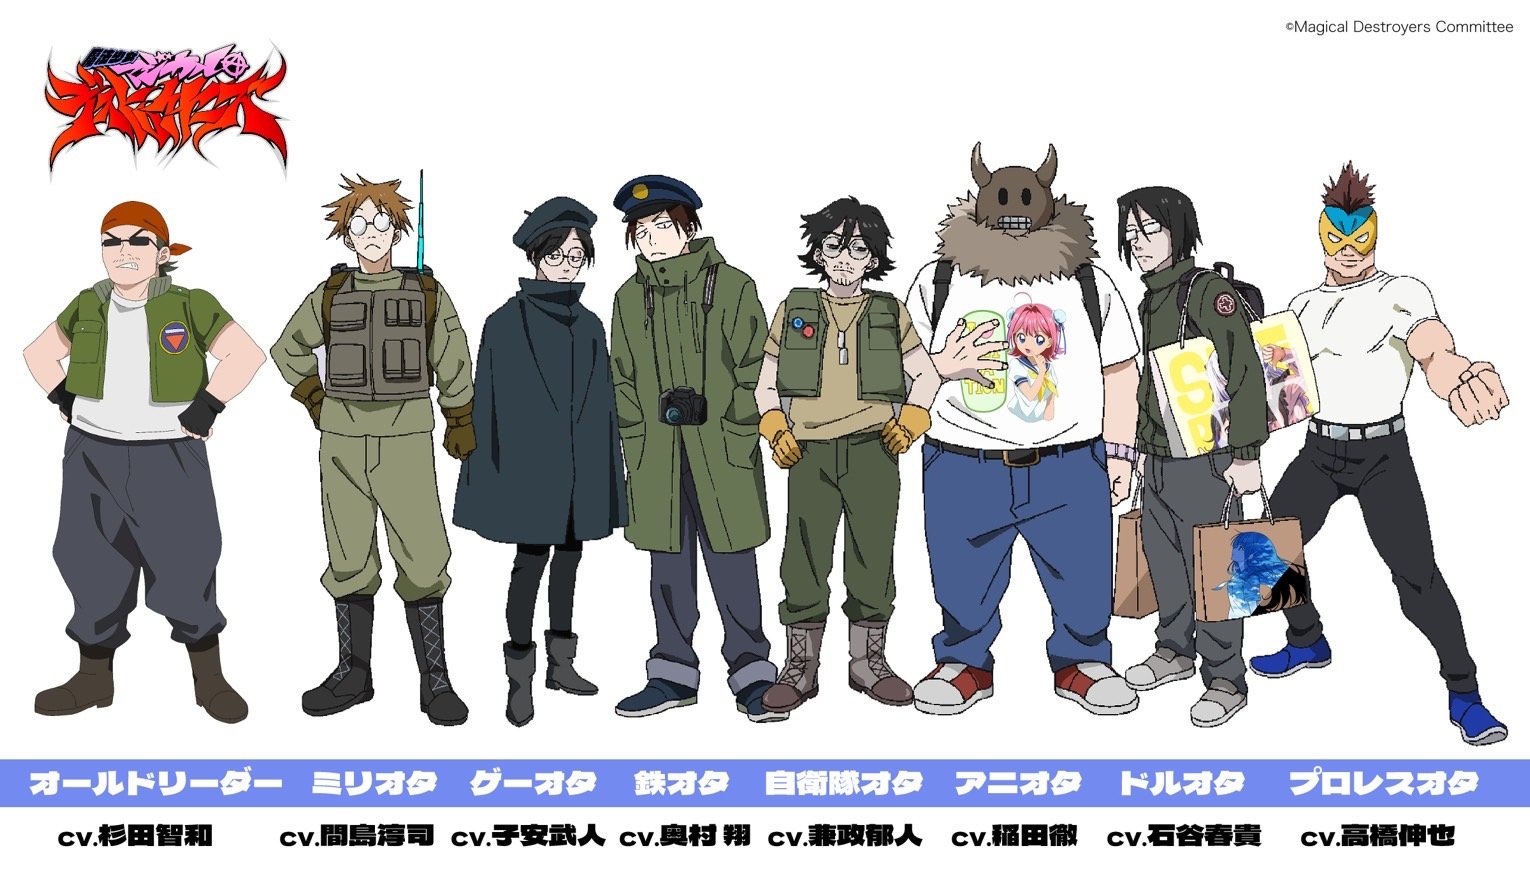  Old Leader, Military Otaku, Game Otaku, Train Otaku, JSDF Otaku, Anime Otaku, Idol Otaku, y Pro-Wrestling Otaku.